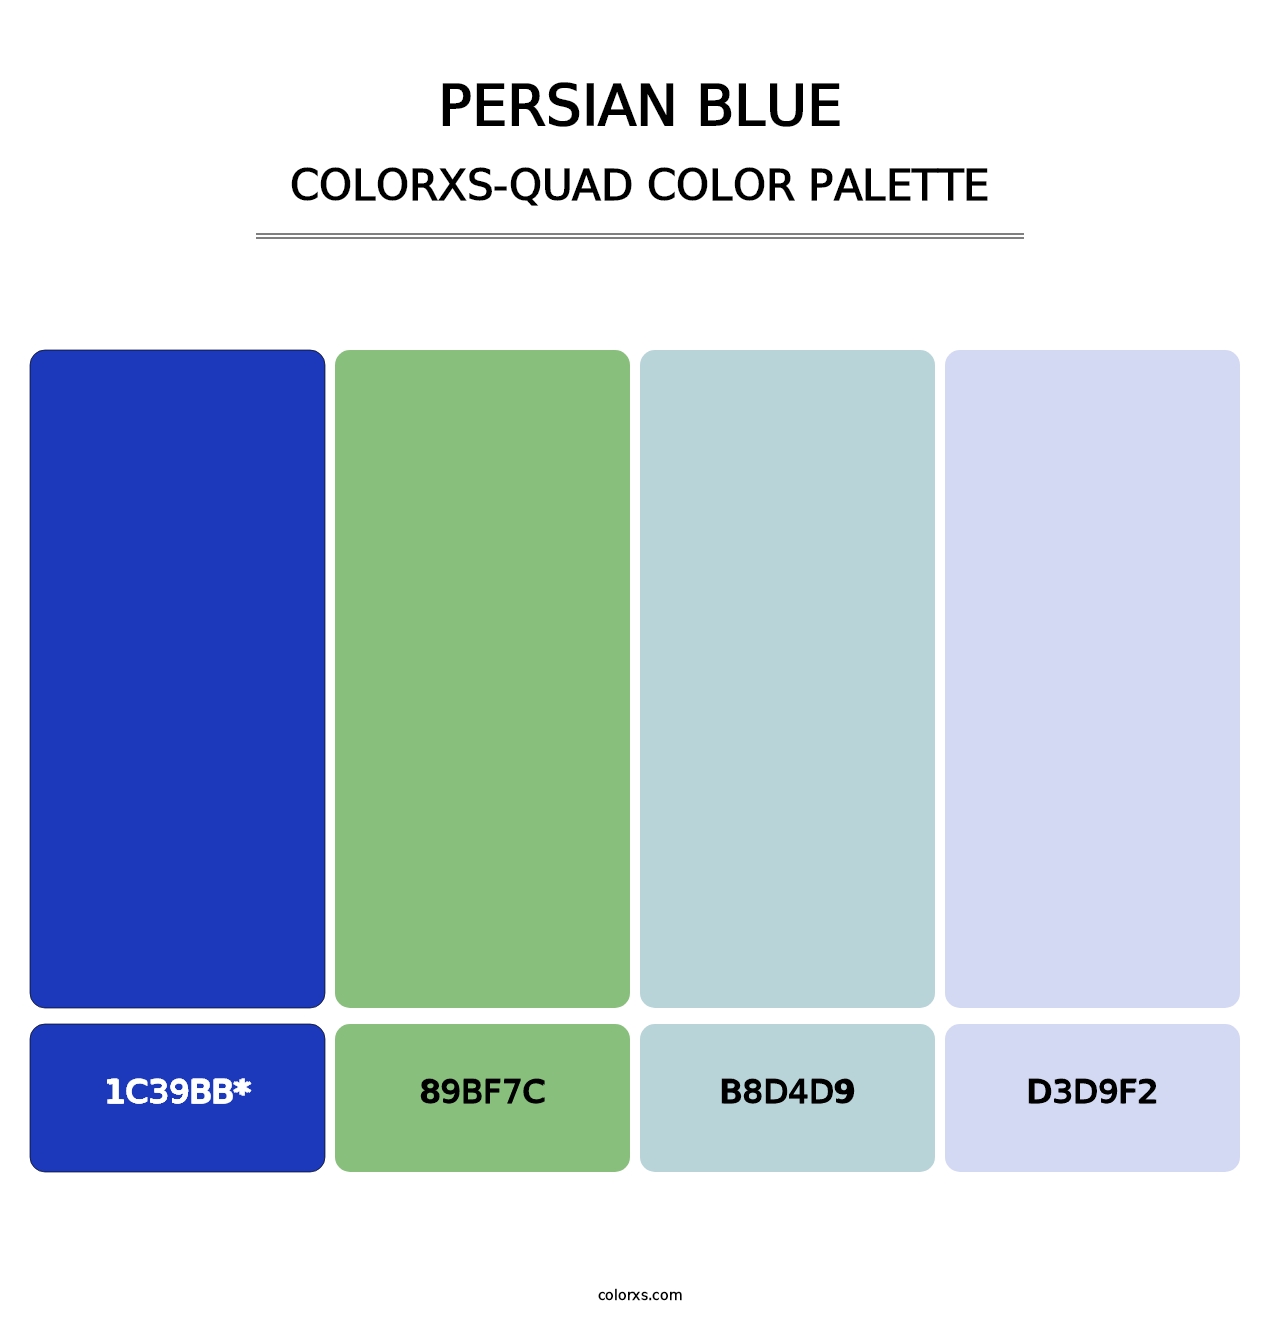 Persian Blue - Colorxs Quad Palette